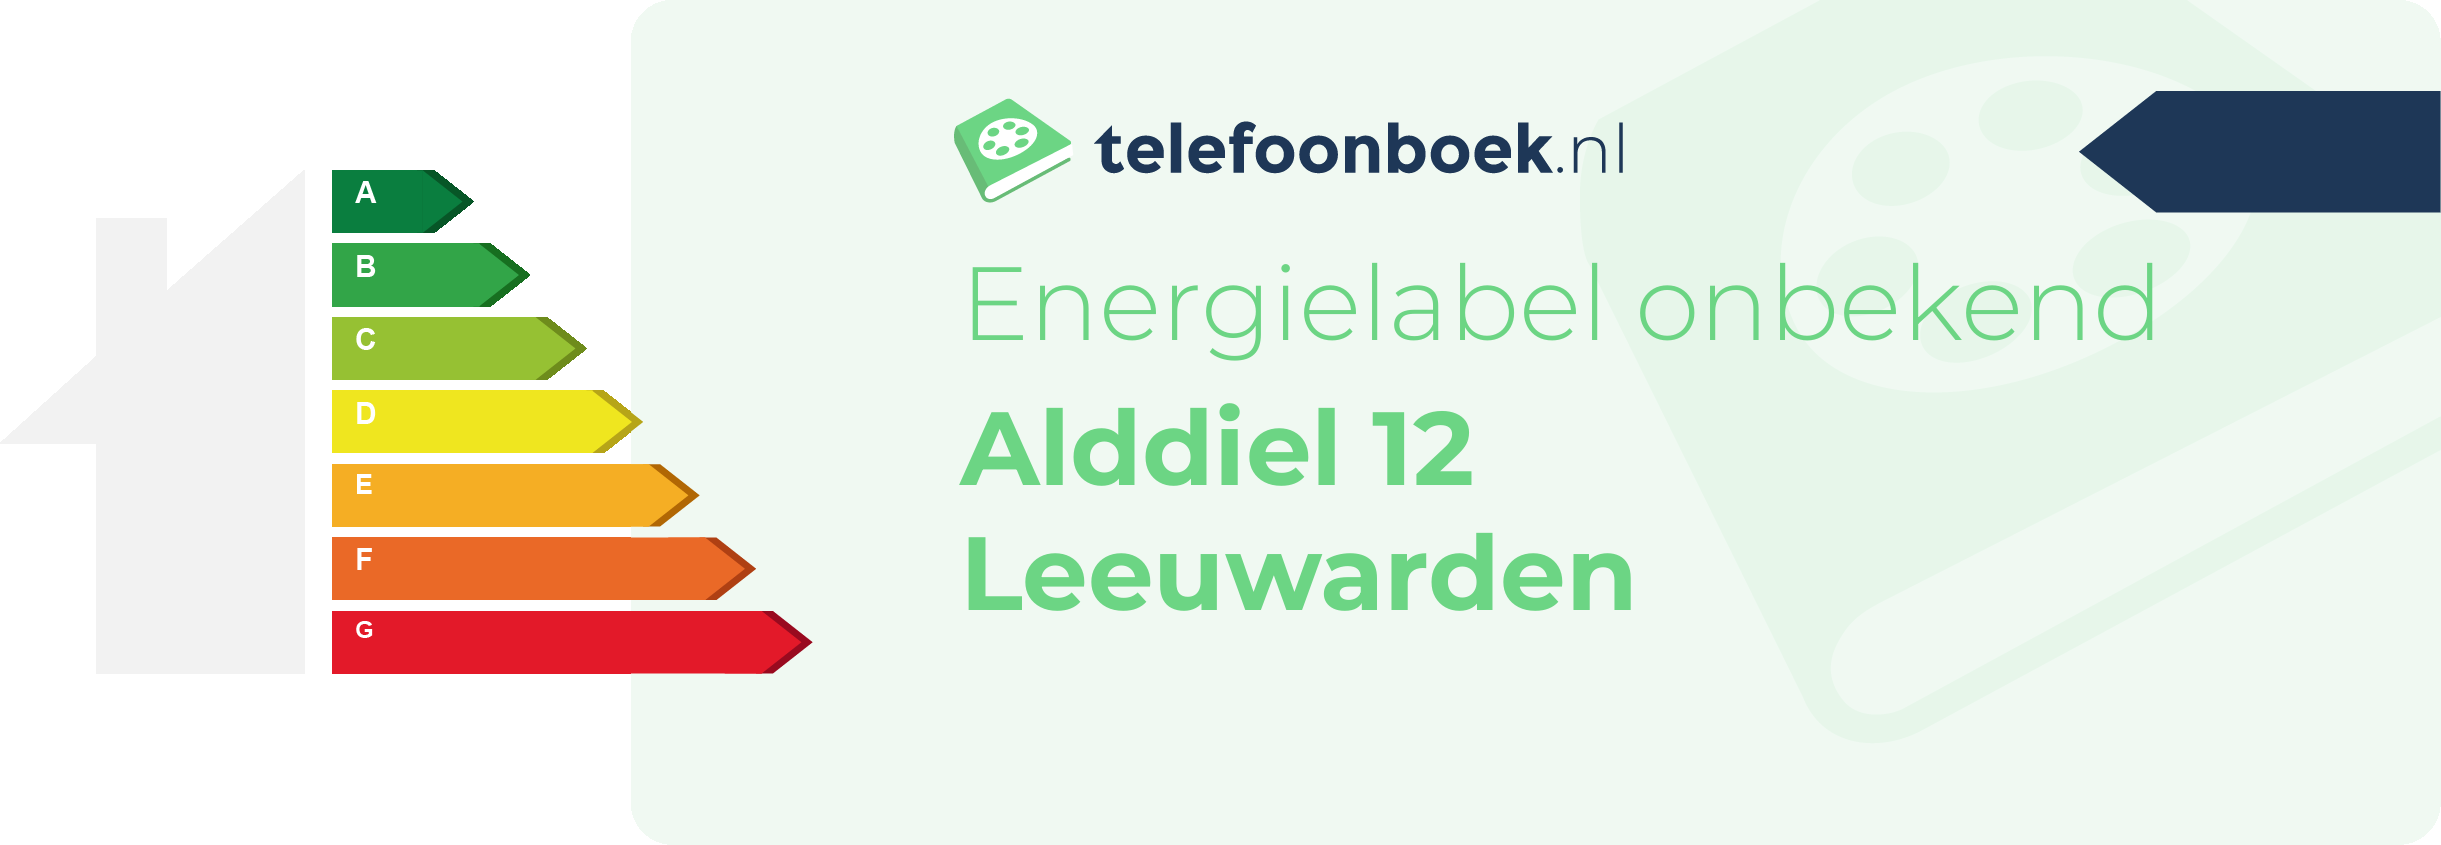 Energielabel Alddiel 12 Leeuwarden